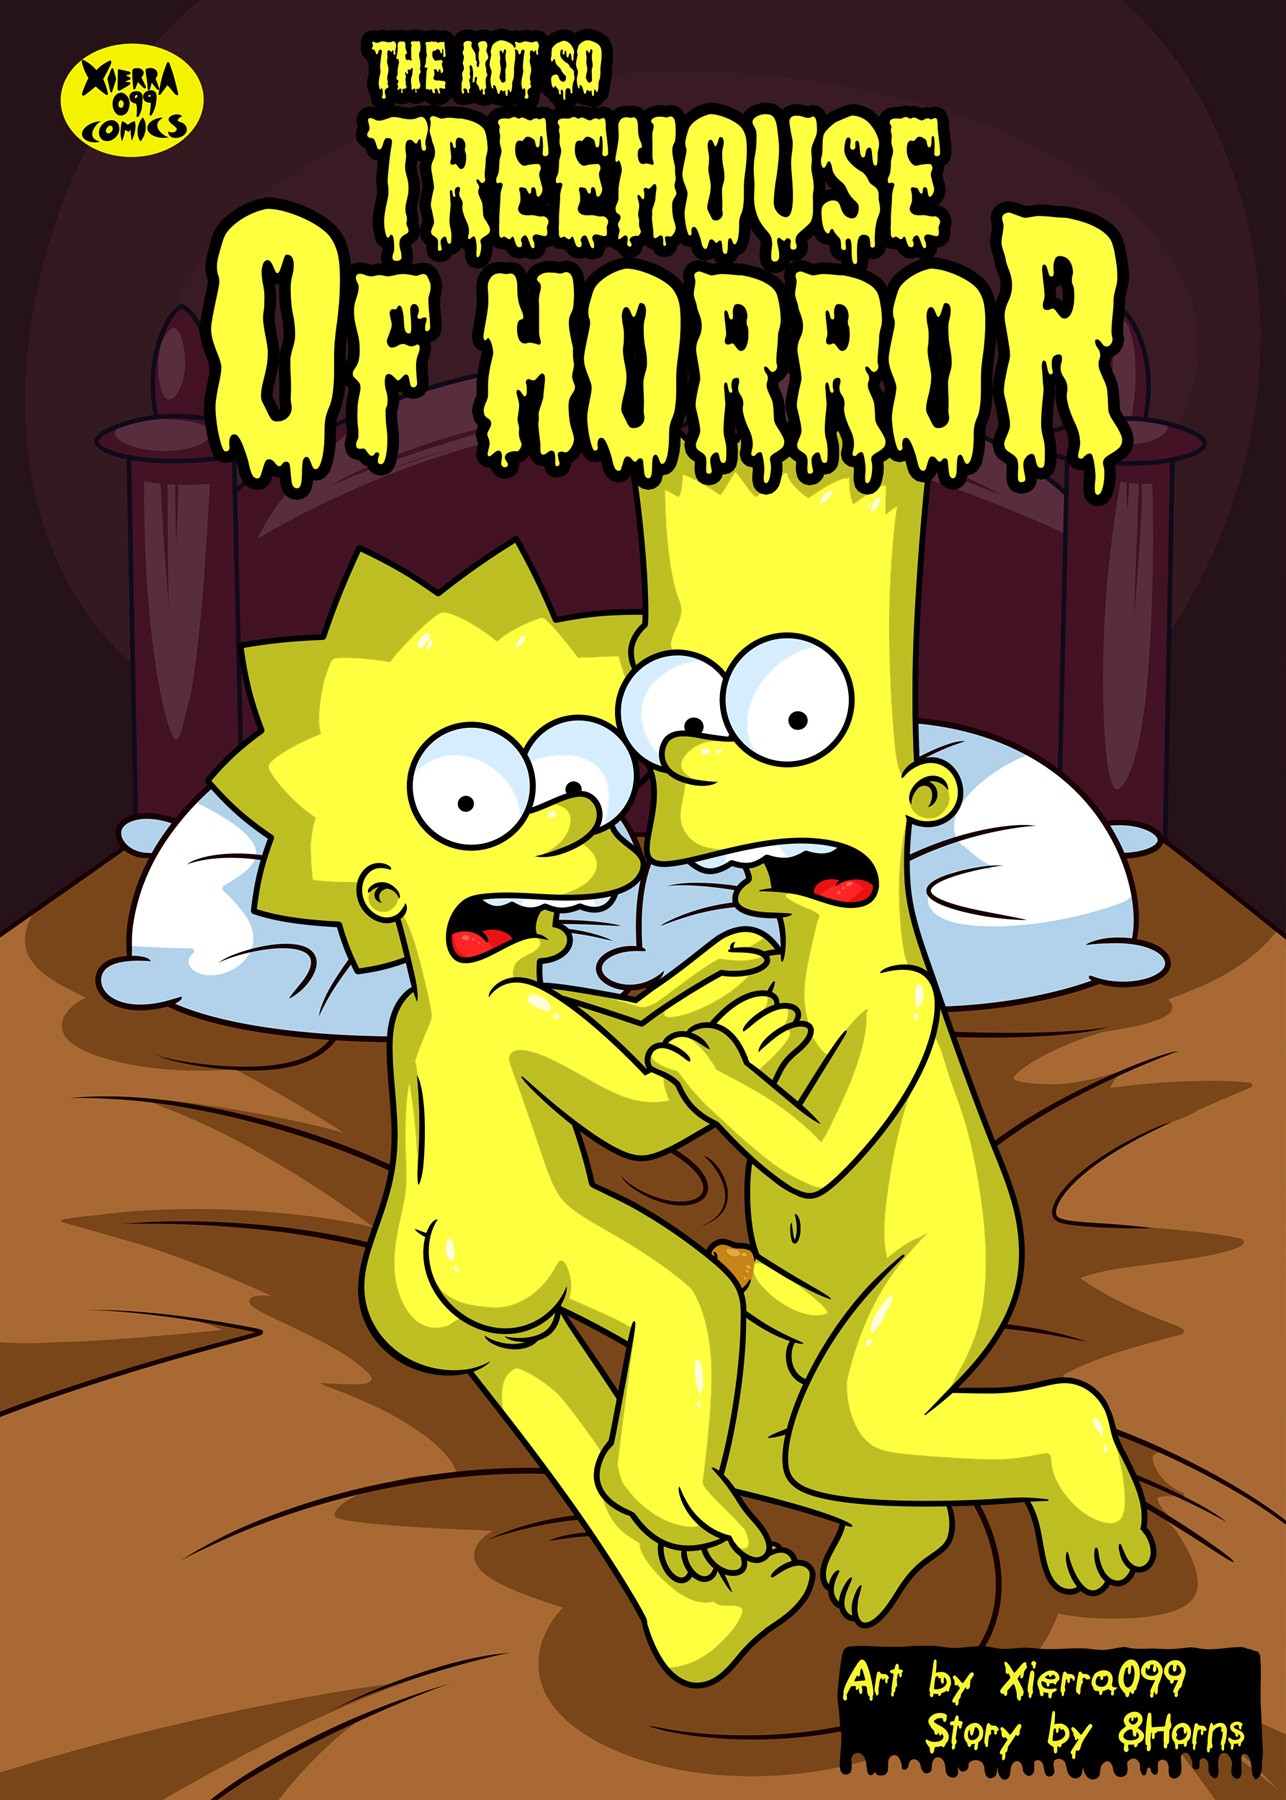 Los Simpsons Porno Sexo Incesto Entre Bart Y Lisa Vercomicsporno